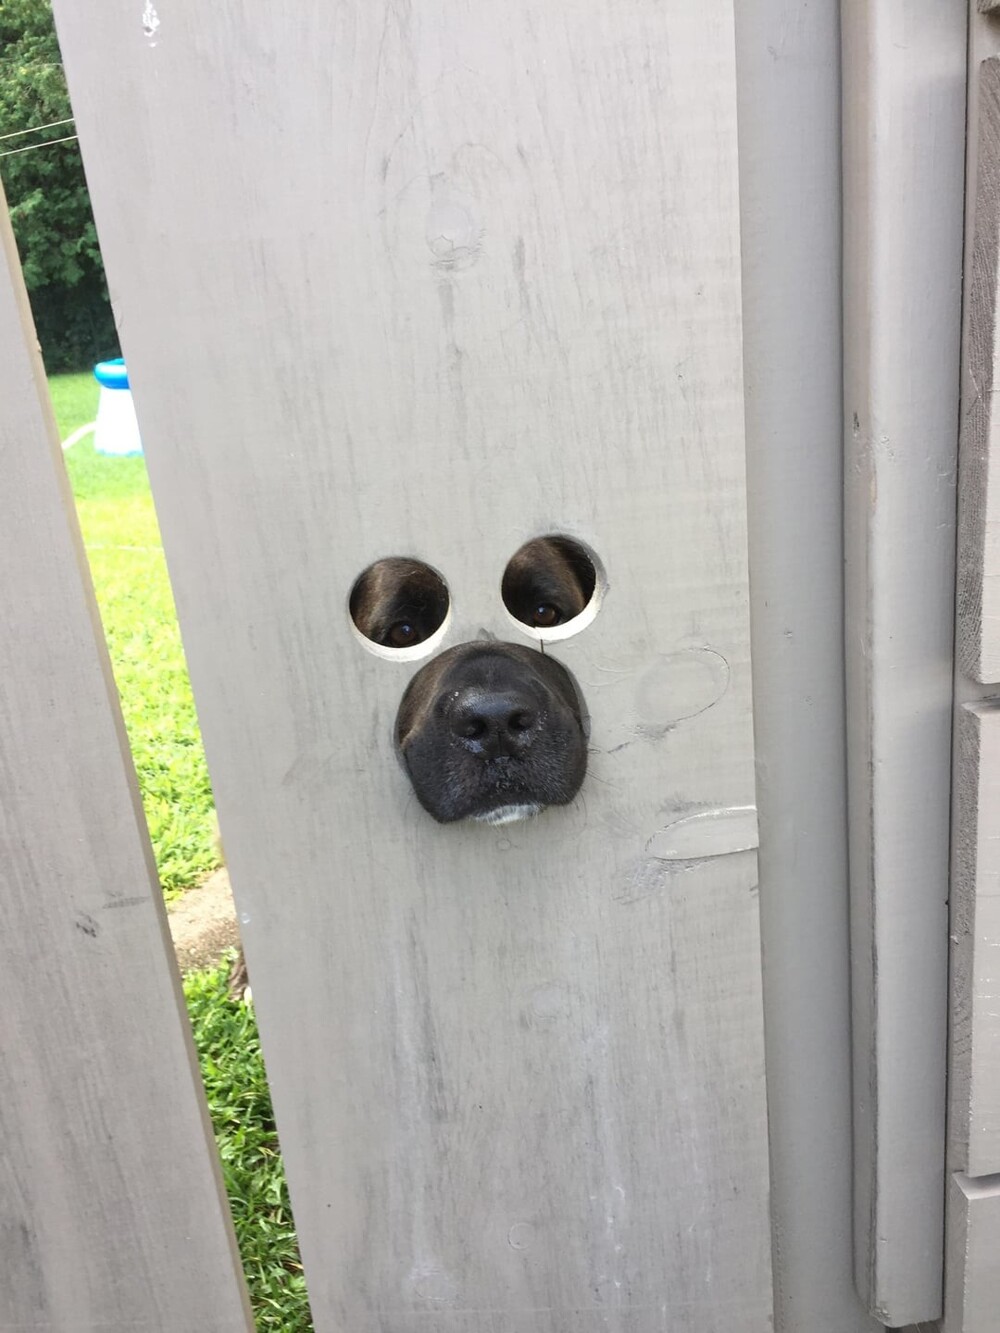 6. "Сосед прорезал дырки в заборе, чтобы его собака могла видеть улицу"